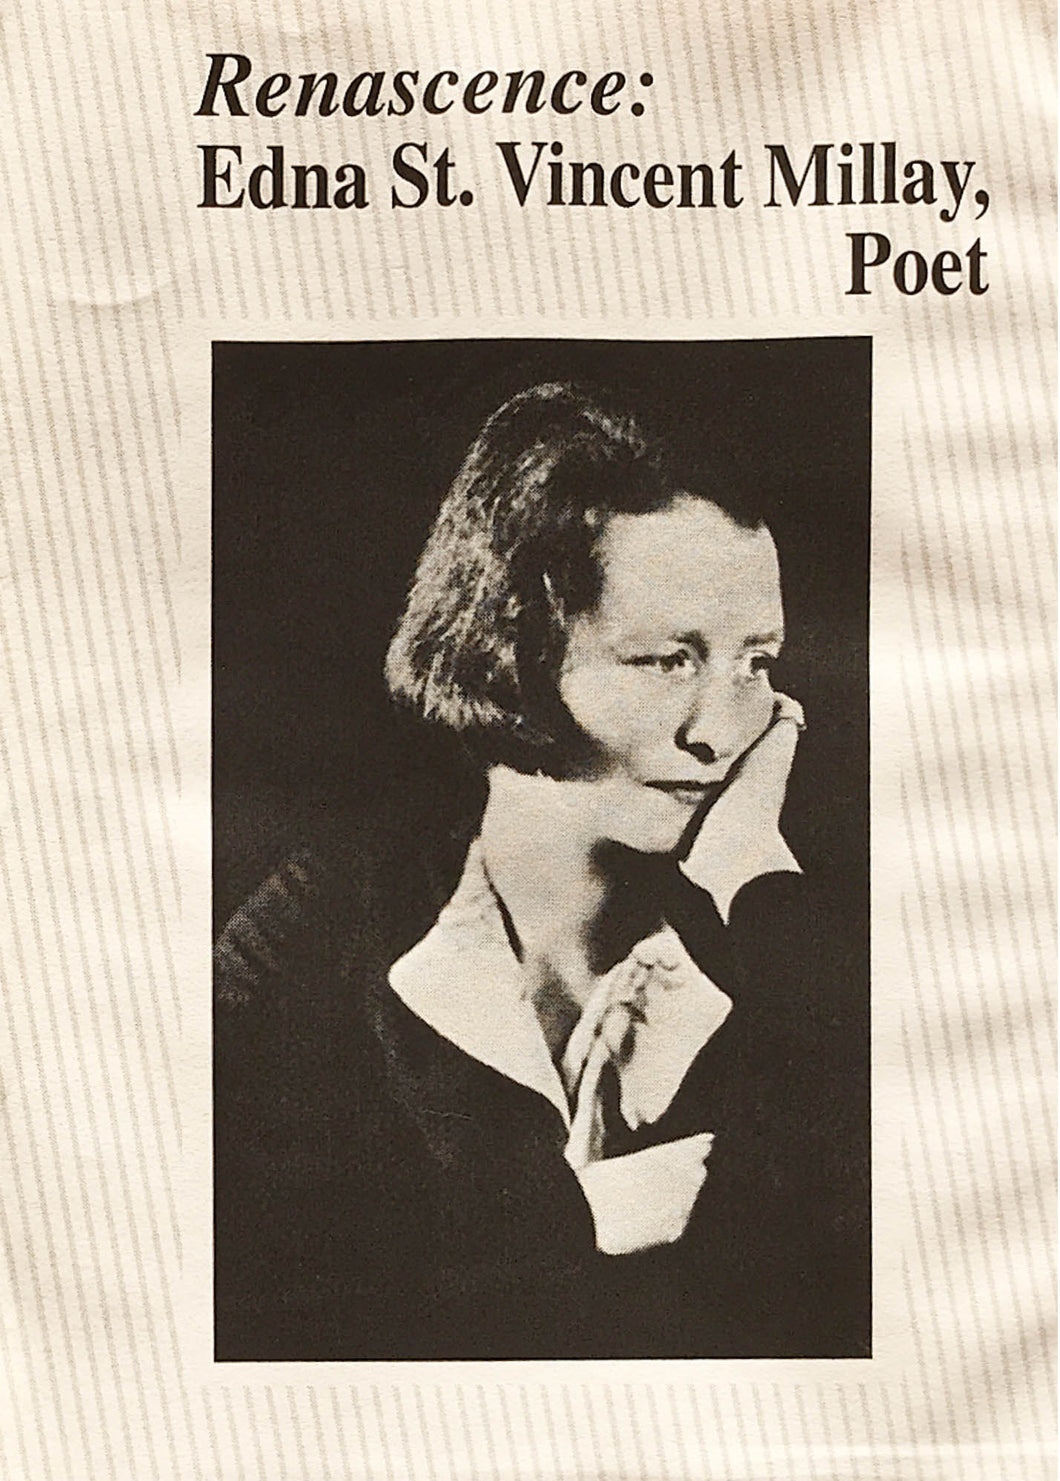 Renascence: Edna St. Vincent Millay, Poet